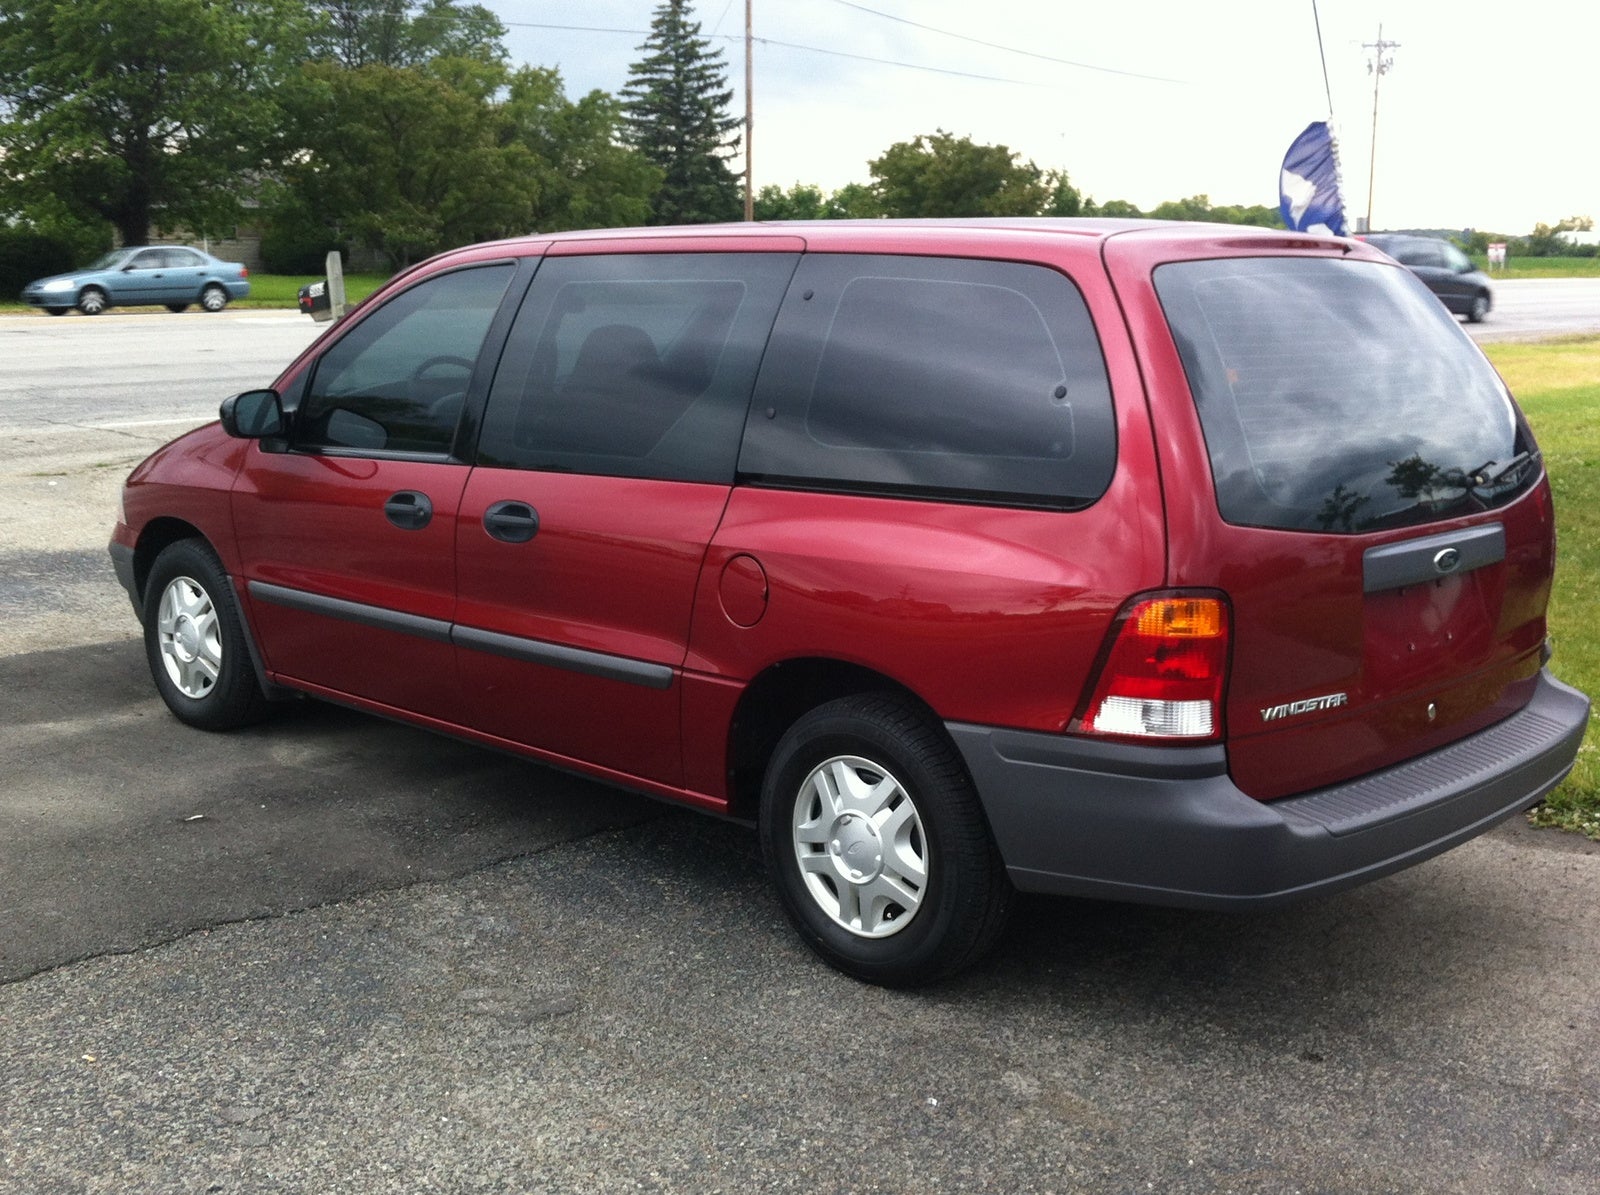 1999 Ford windstar passenger lx minivan #3